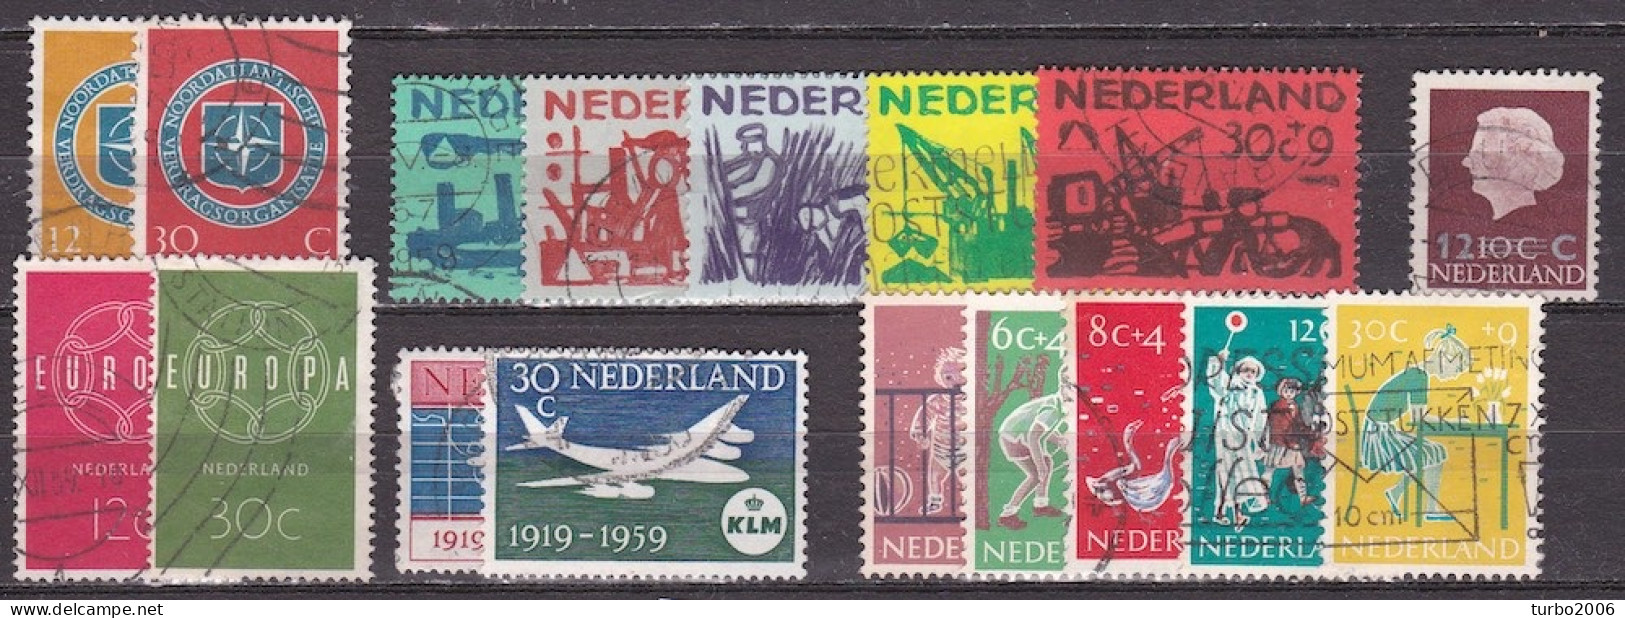 Nederland 1959 Complete Gestempelde Jaargang NVPH 720 / 735 - Annate Complete